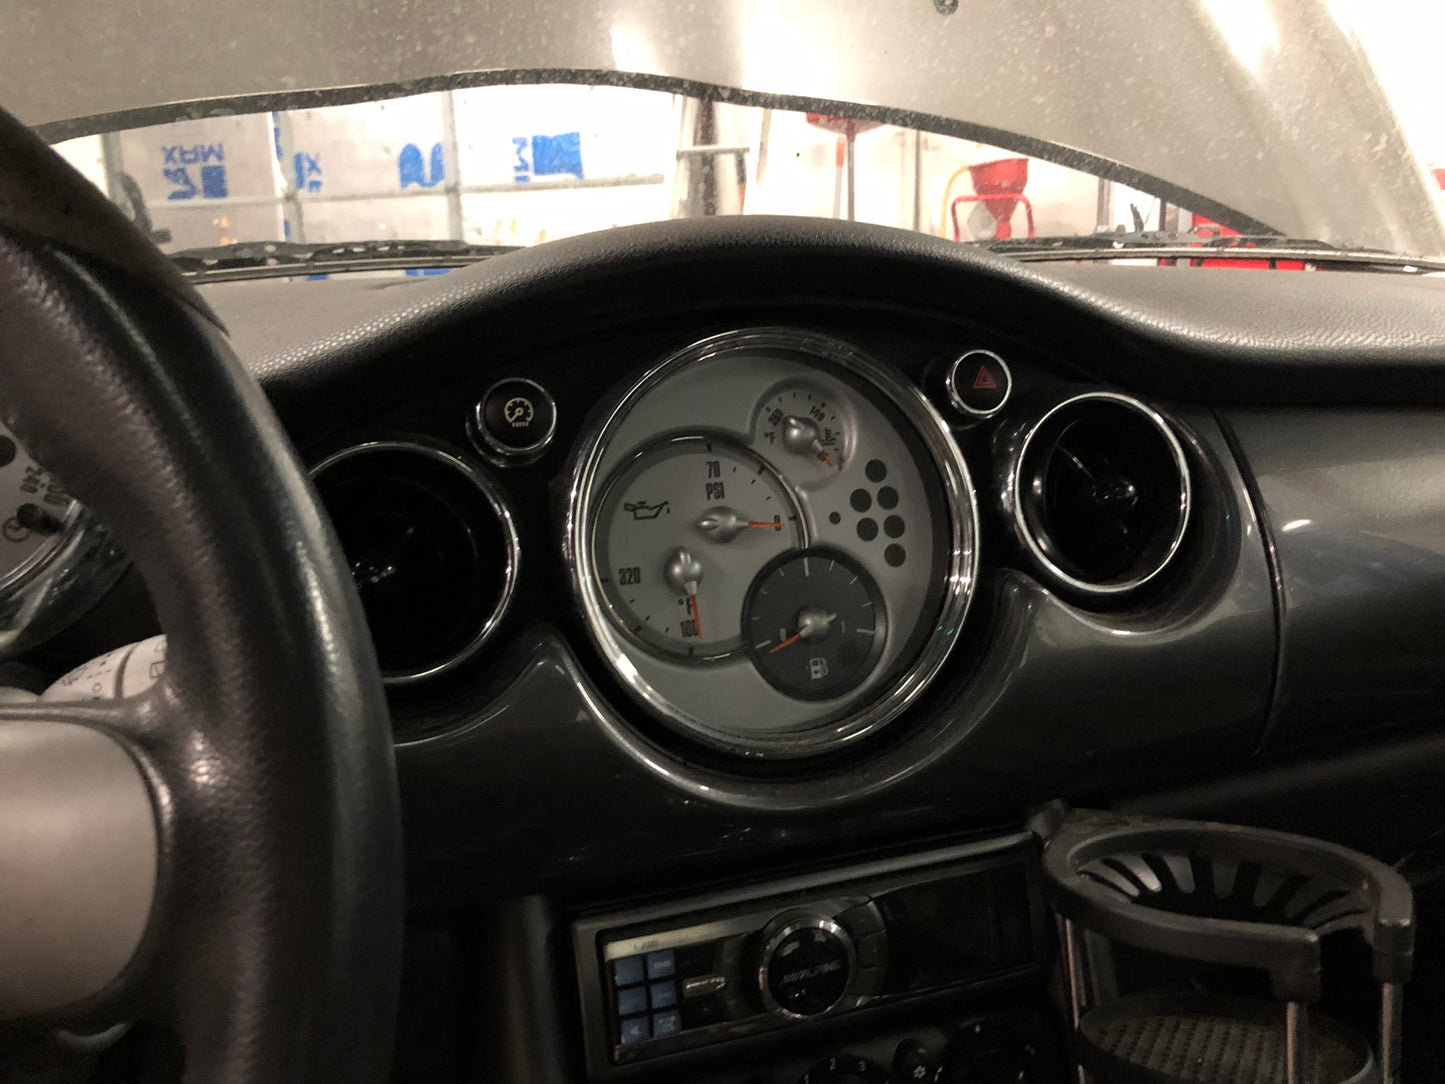 2006 MINI Cooper Hatchback S, New Parts Car (December 2021) Stk # 270